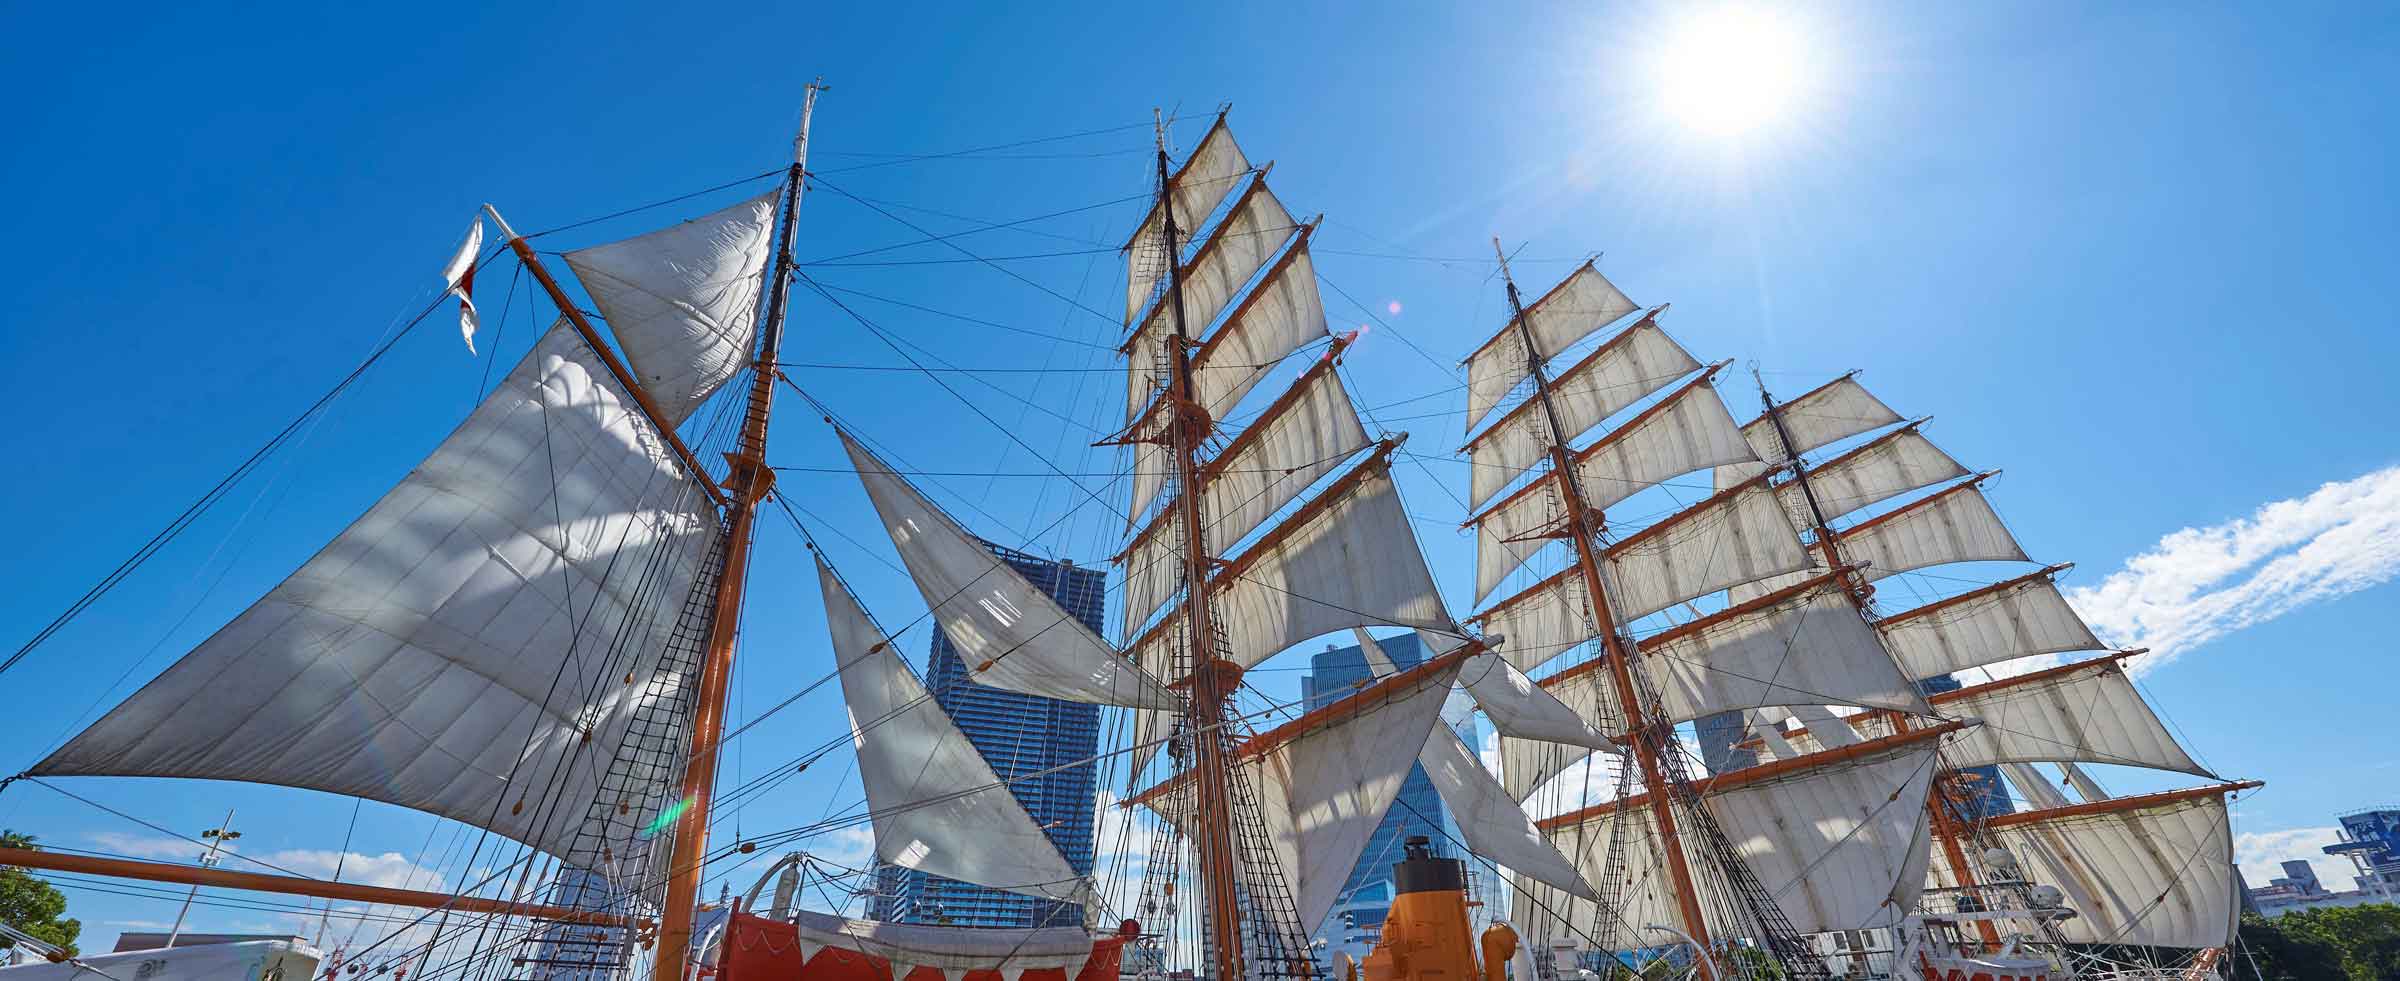 帆船日本丸 - 帆船日本丸・横浜みなと博物館